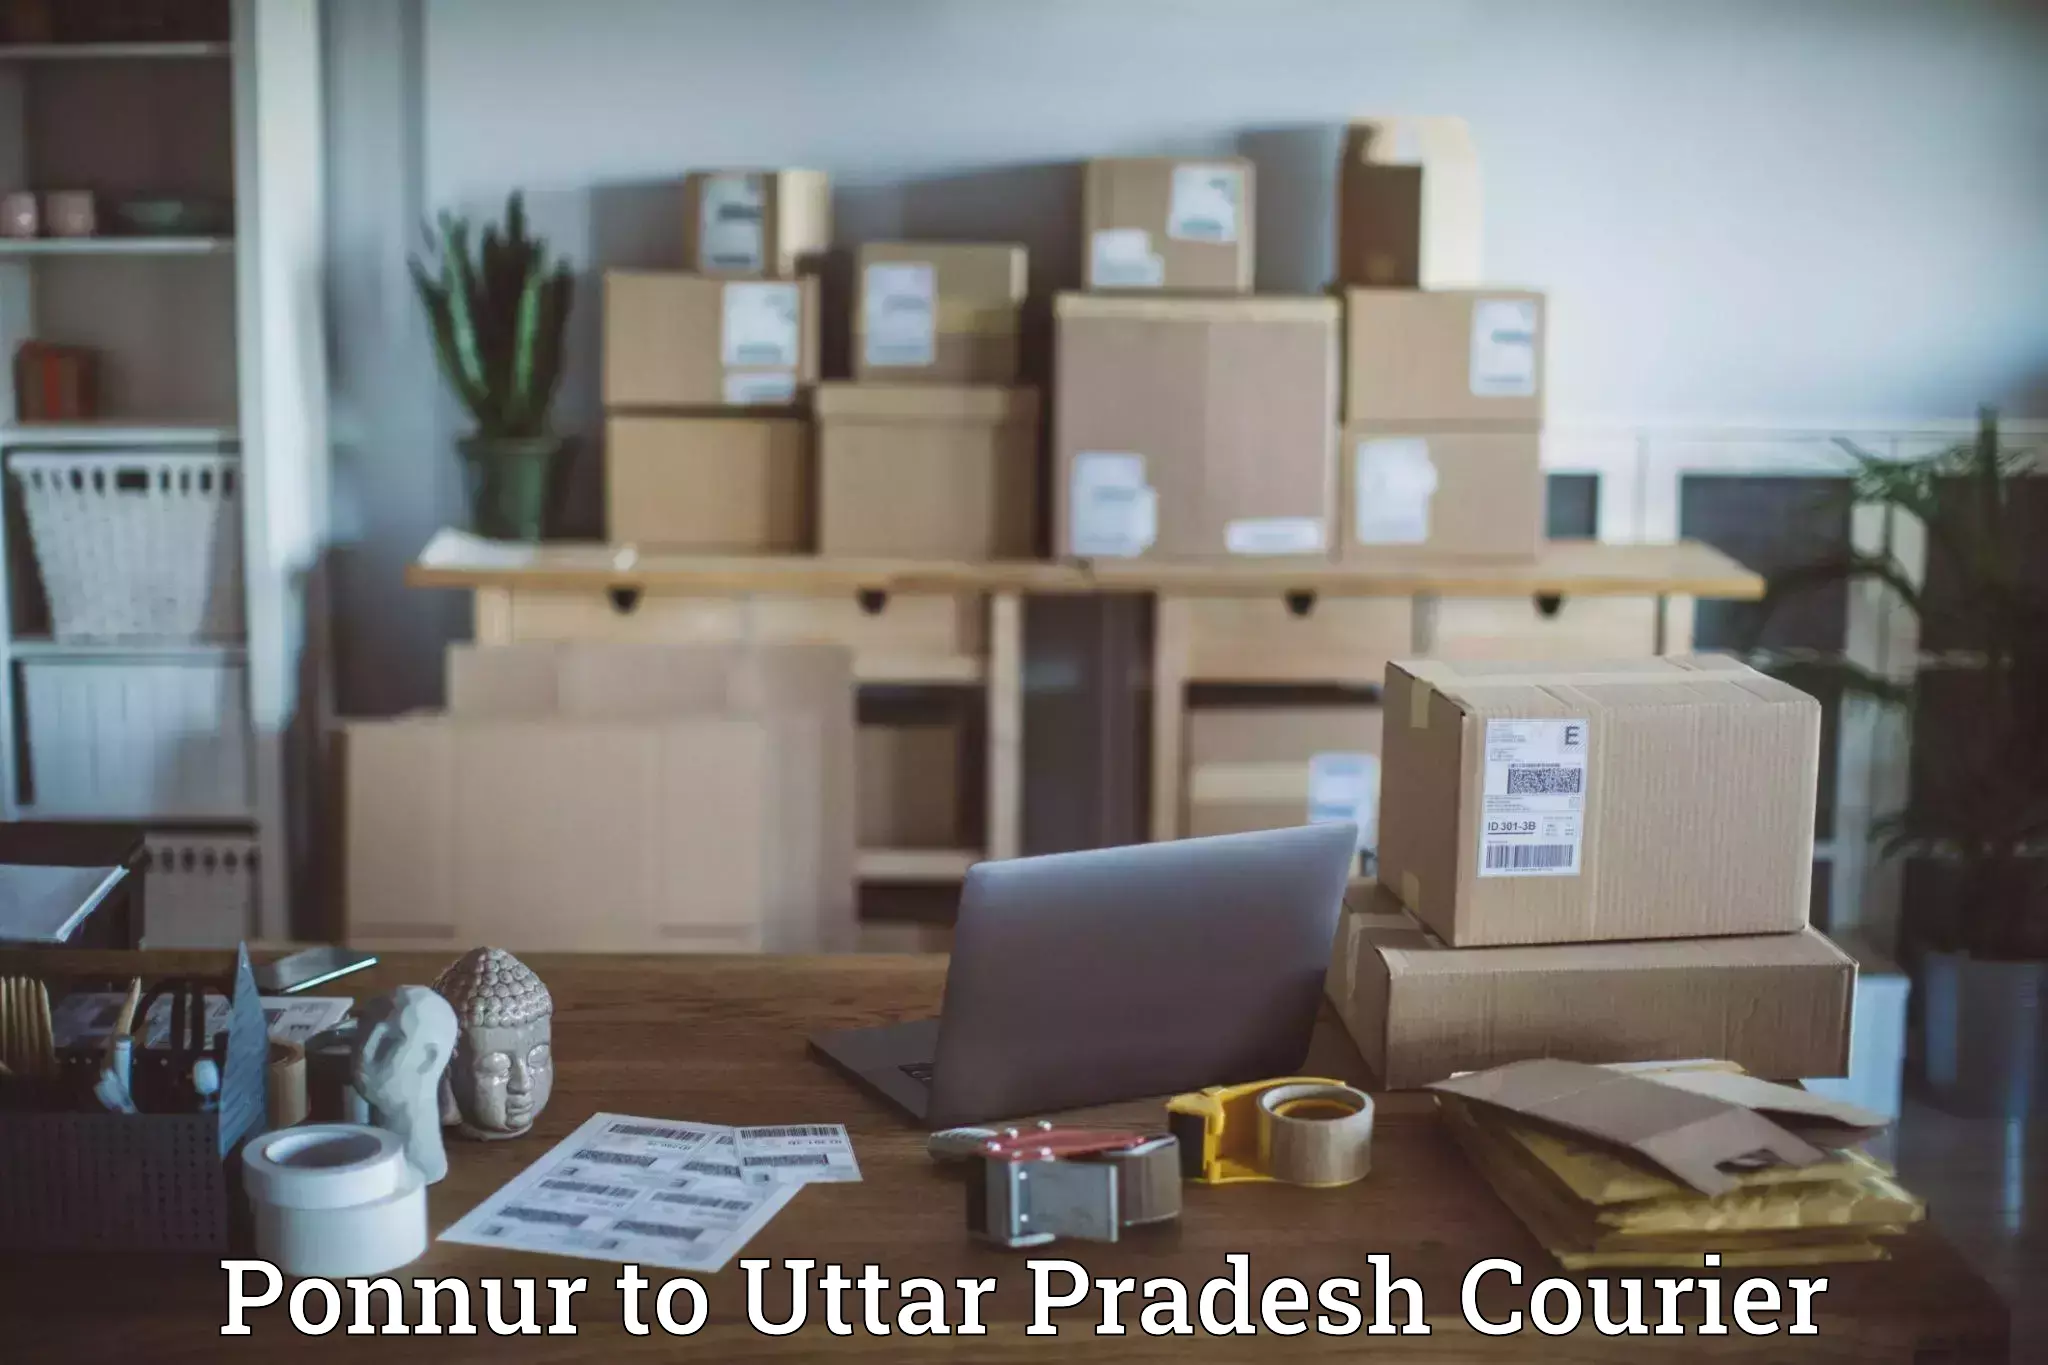 Urban courier service Ponnur to Aligarh Muslim University